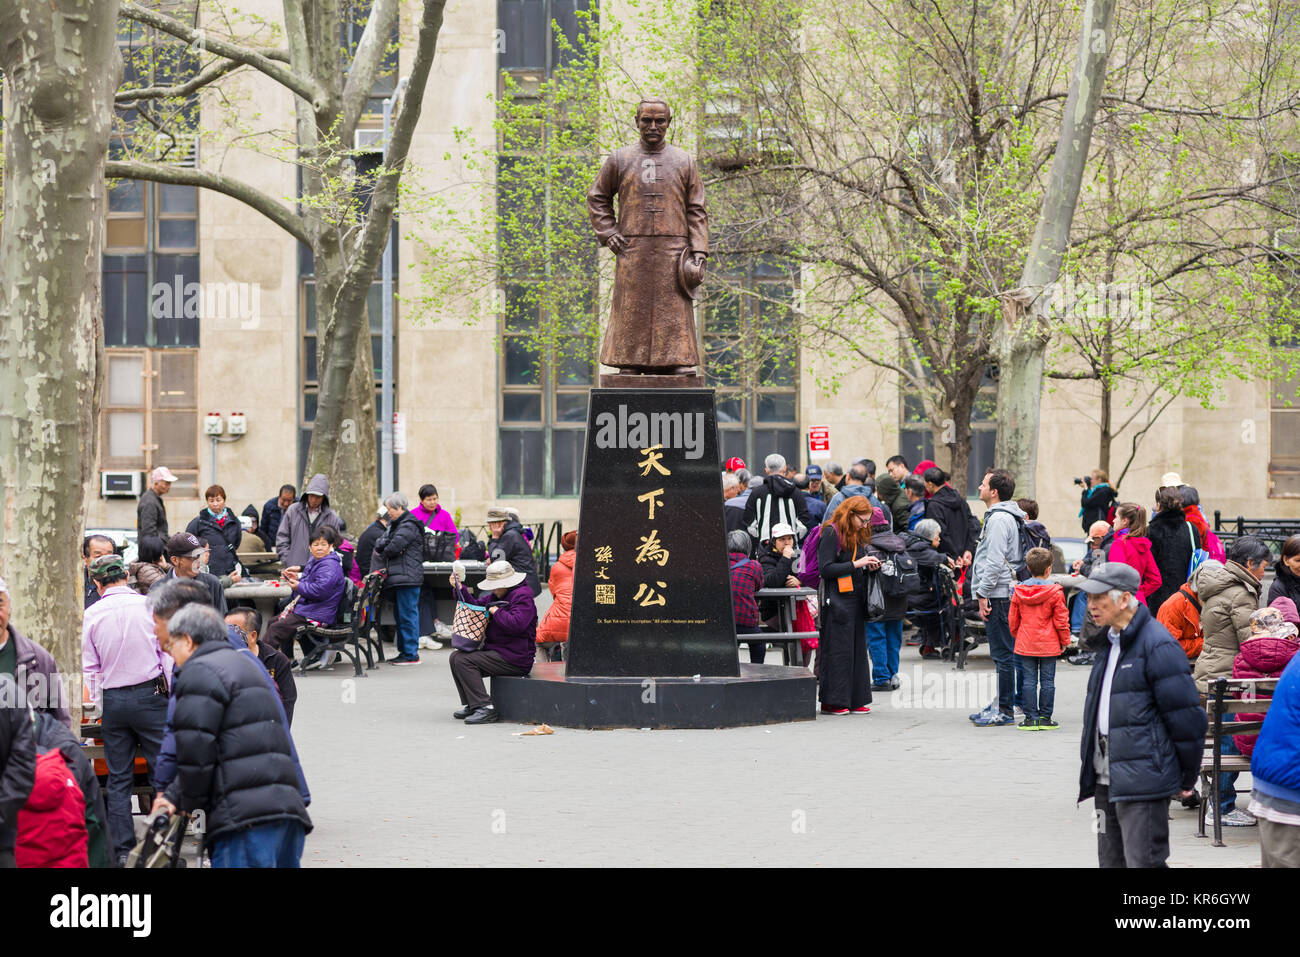 Dr. Sun Yat-sen statue monument à Columbus Park à Manhattan, les Chinois locaux peut être vu jouer aux cartes que les touristes à pied autour, New York, USA Banque D'Images